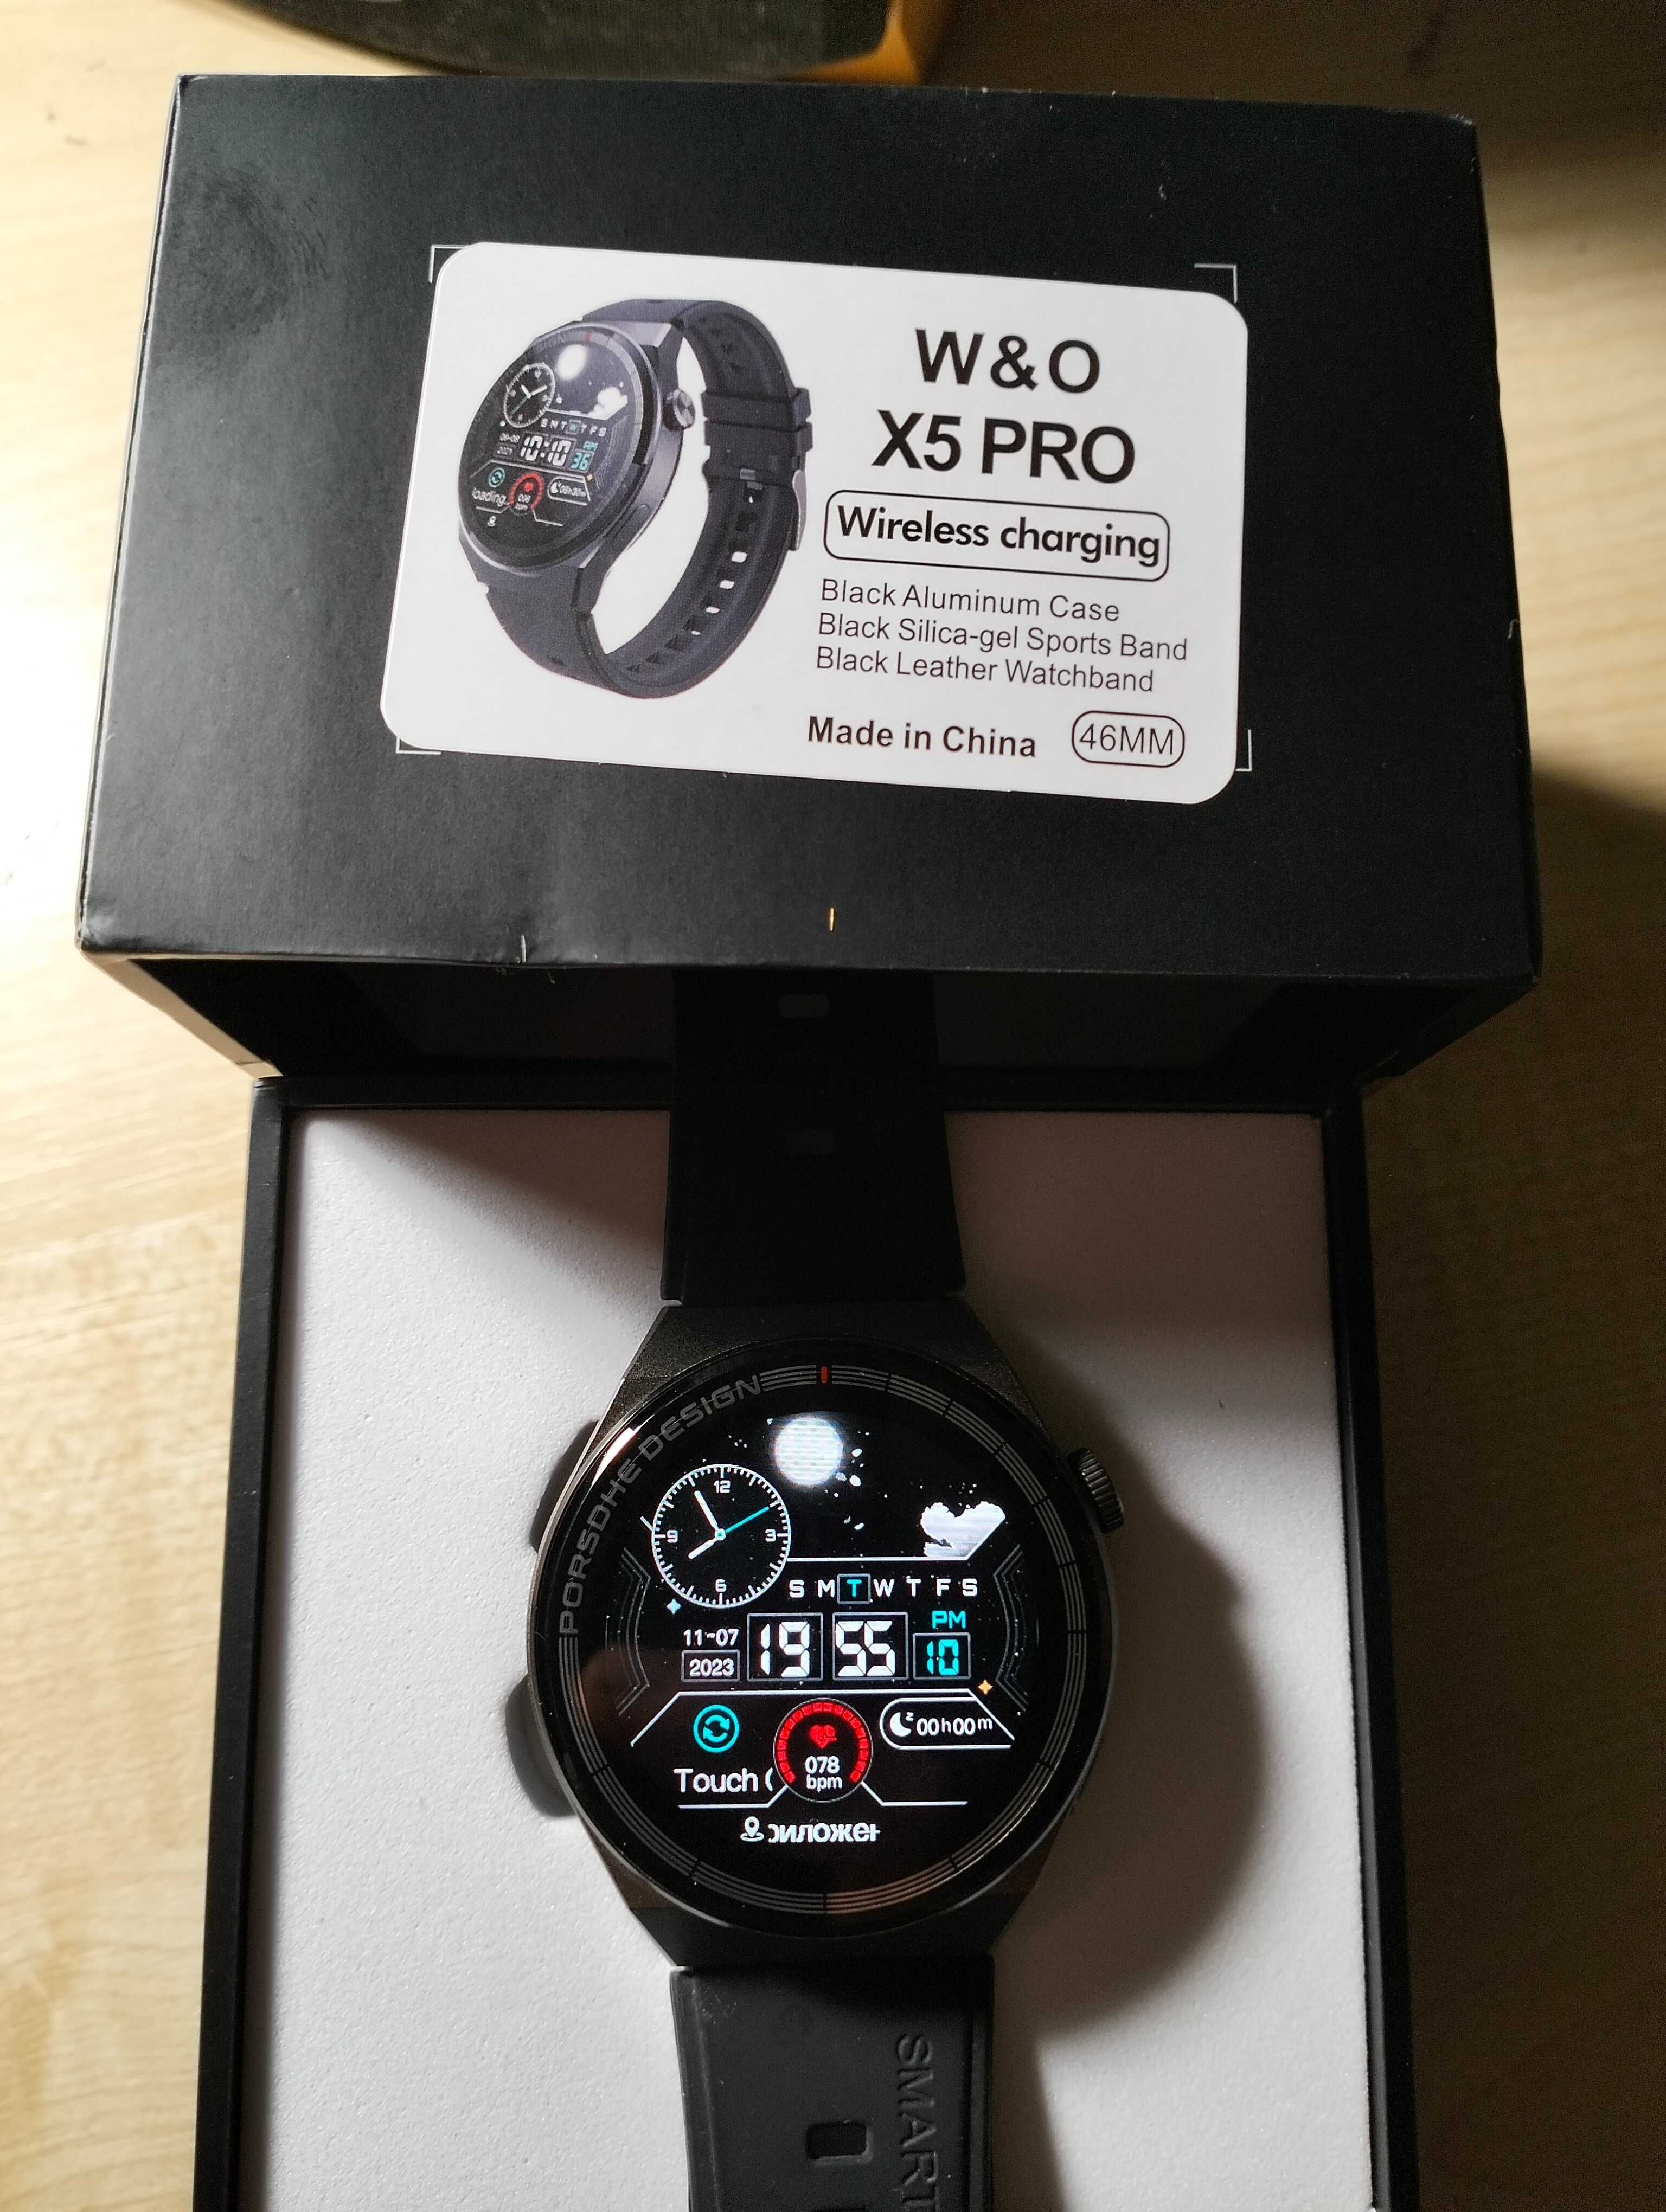 HUAWEI W&O Smart Watch X5 Pro